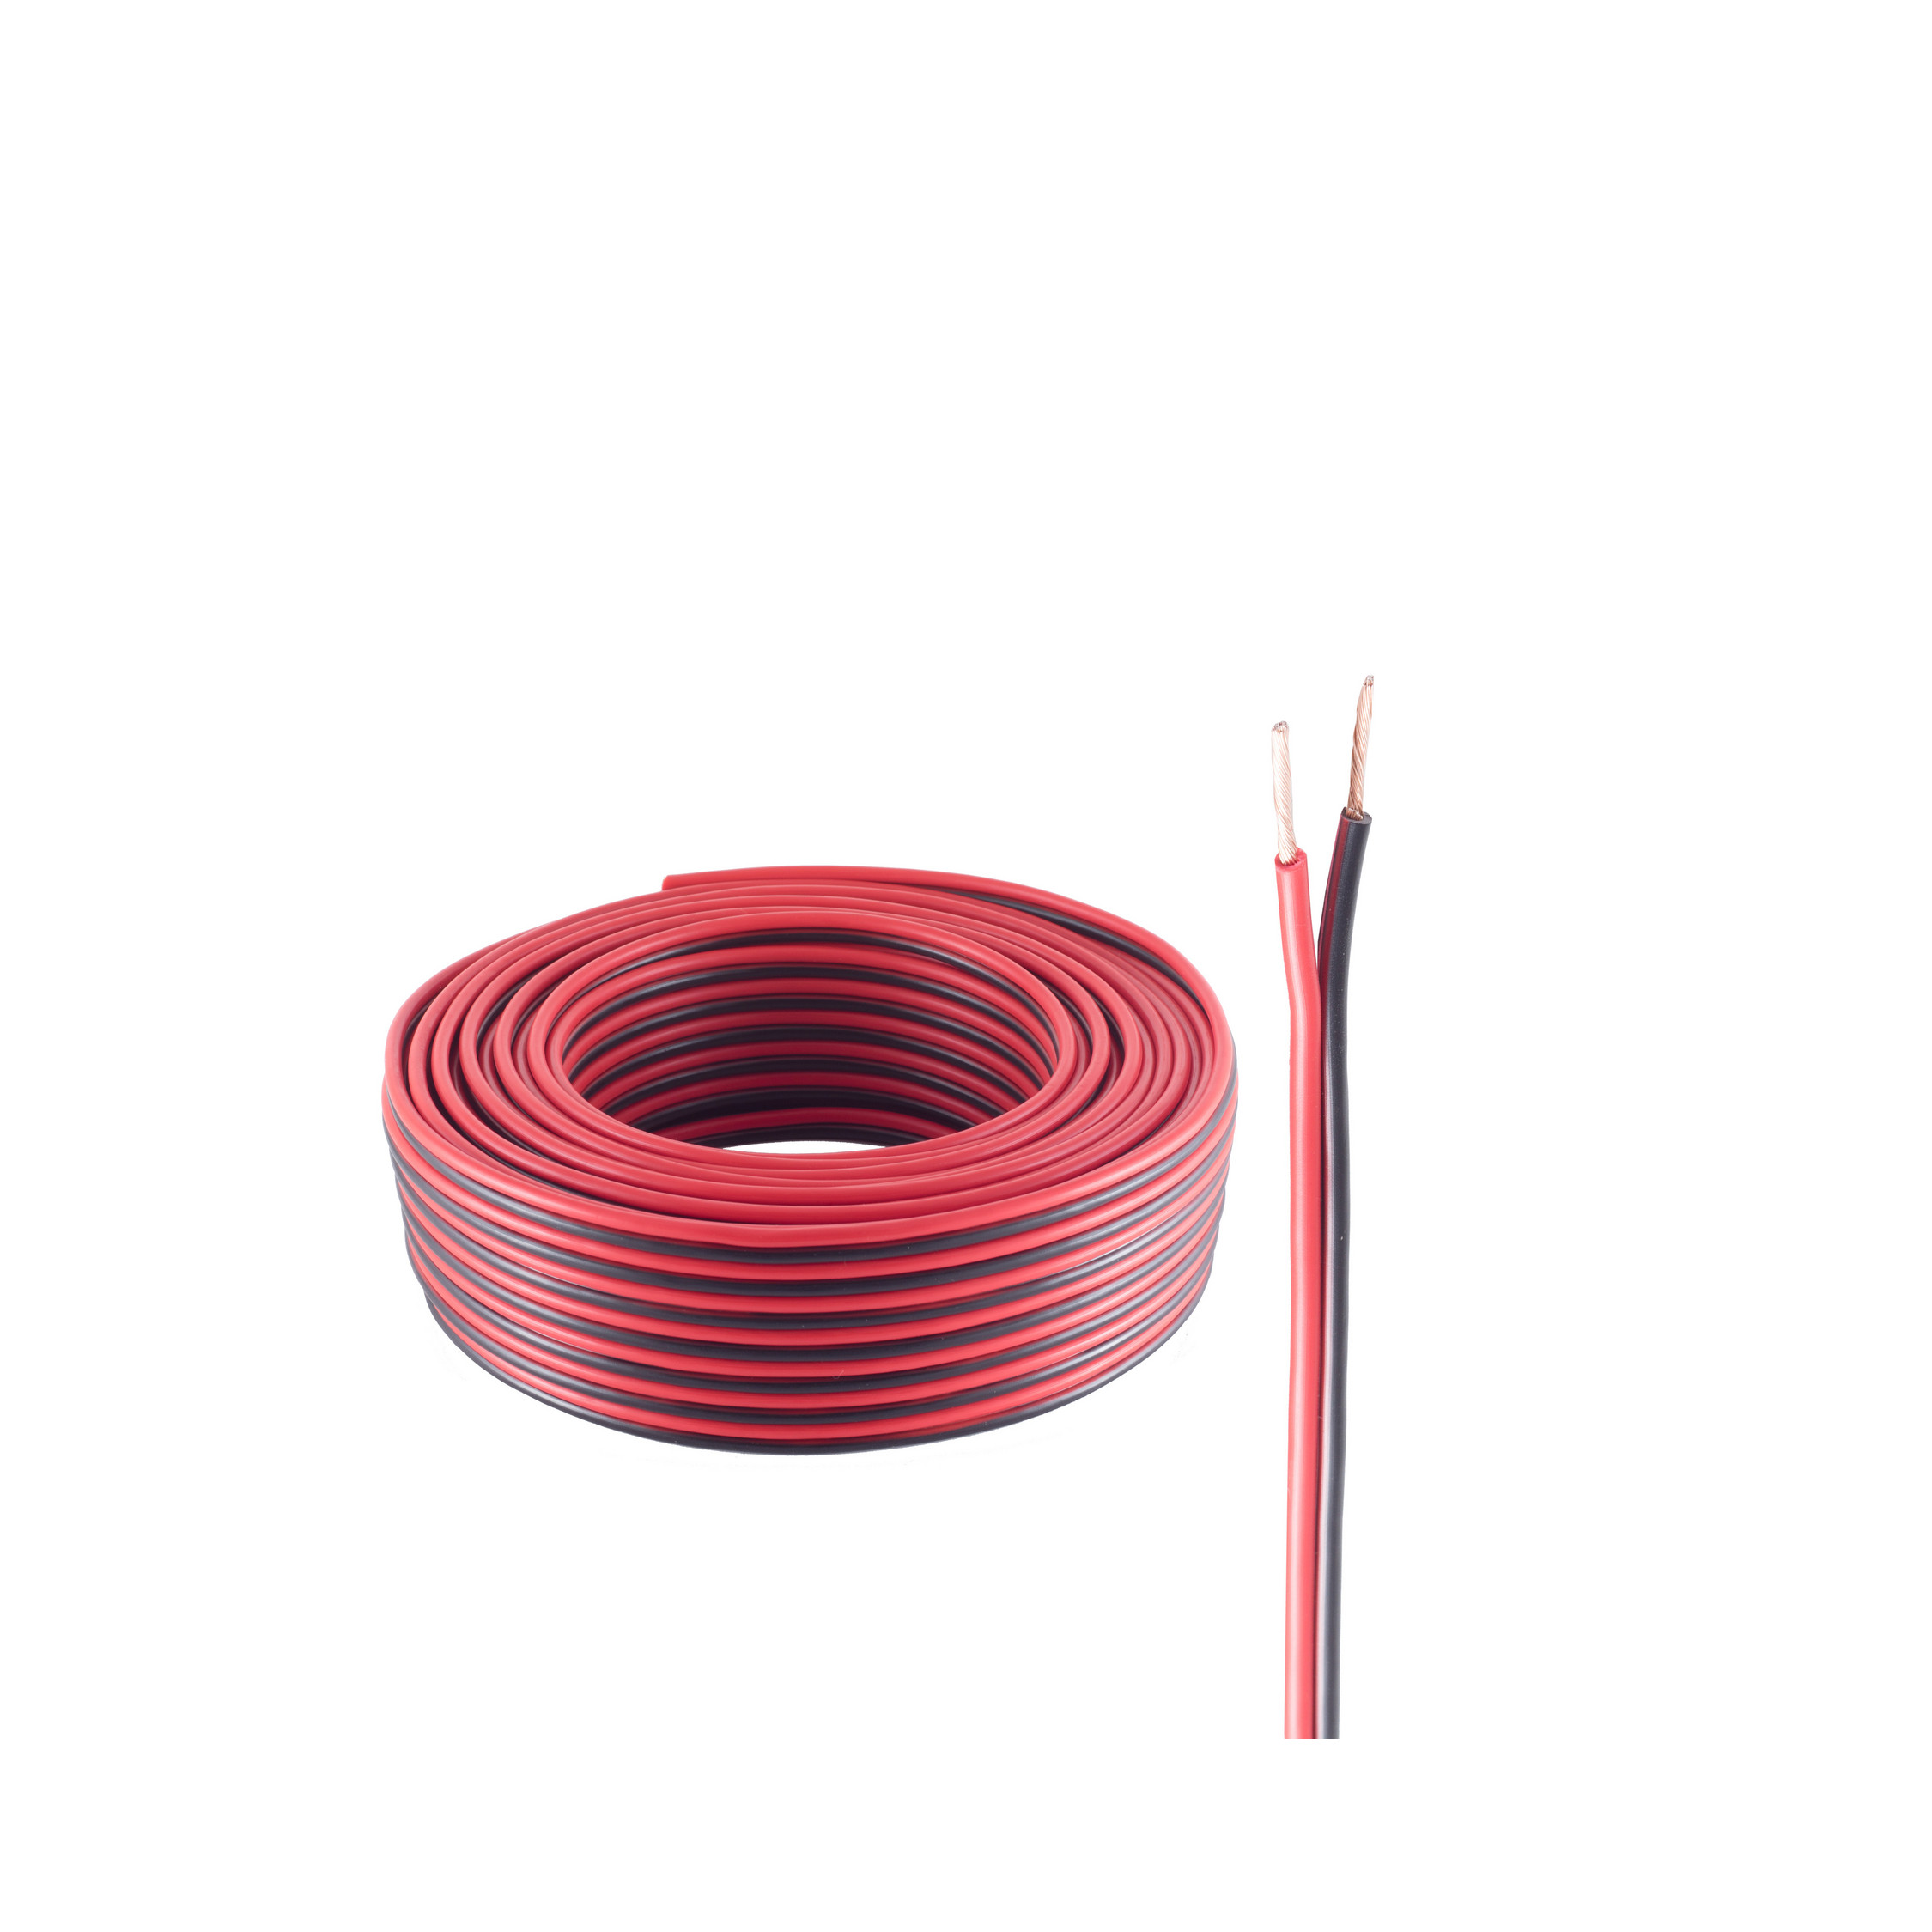 SHIVERPEAKS LS-Kabel 0,75mm² m 25m, 25 Kabel, rot/schwarz Lautsprecher 24x0,2 CCA